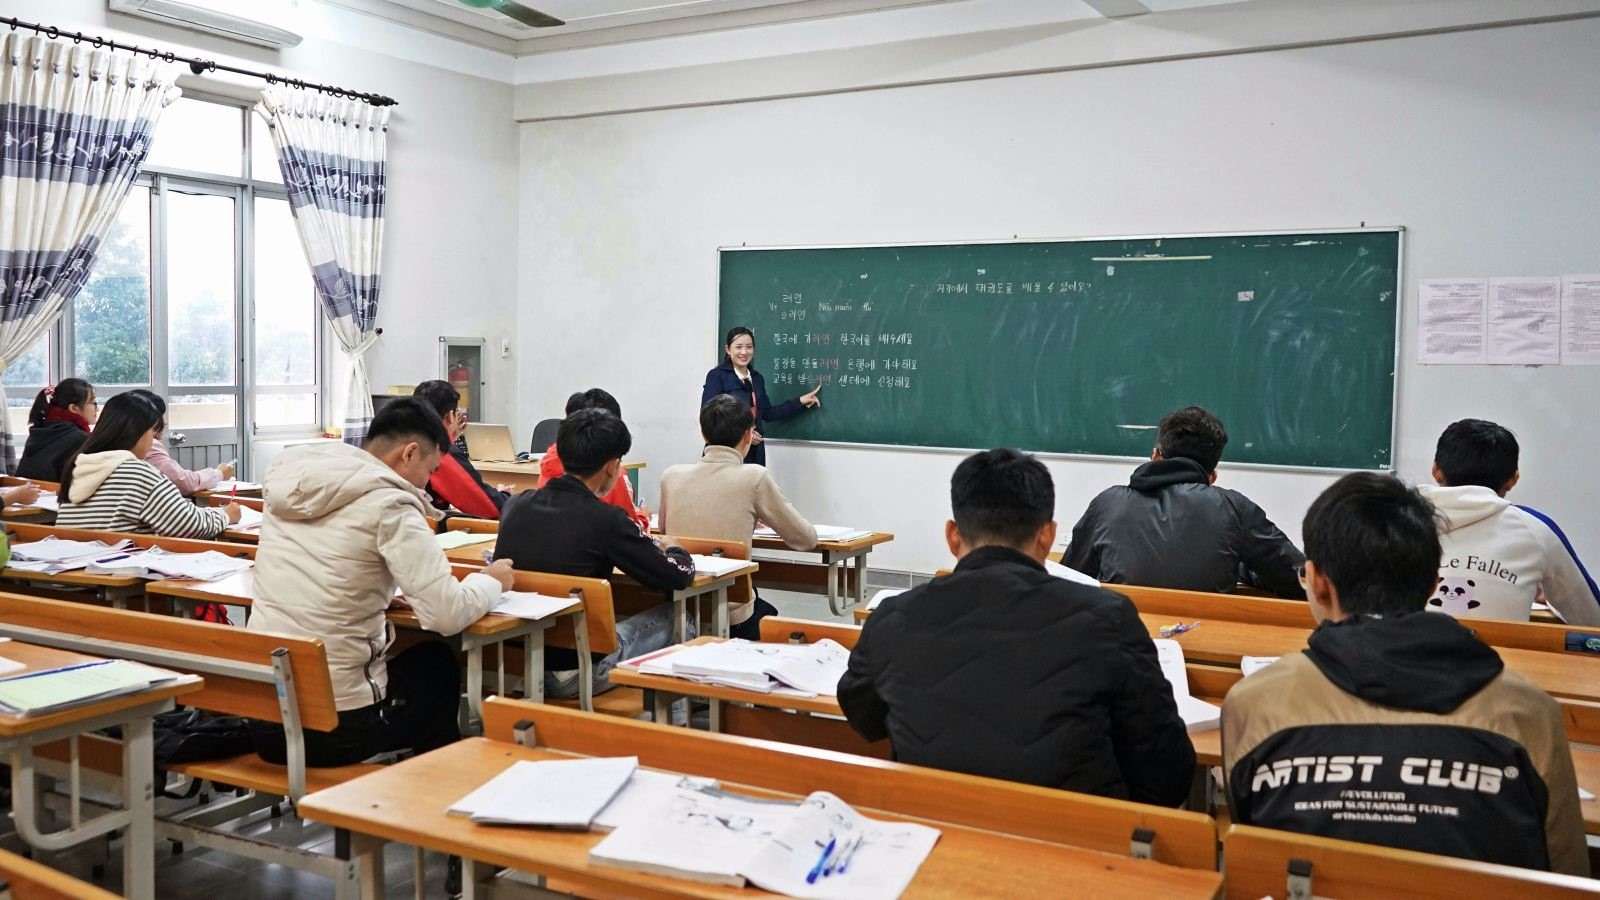 Lớp học tiếng Hàn vẫn được duy trì dù ảnh hưởng dịch Covid -19